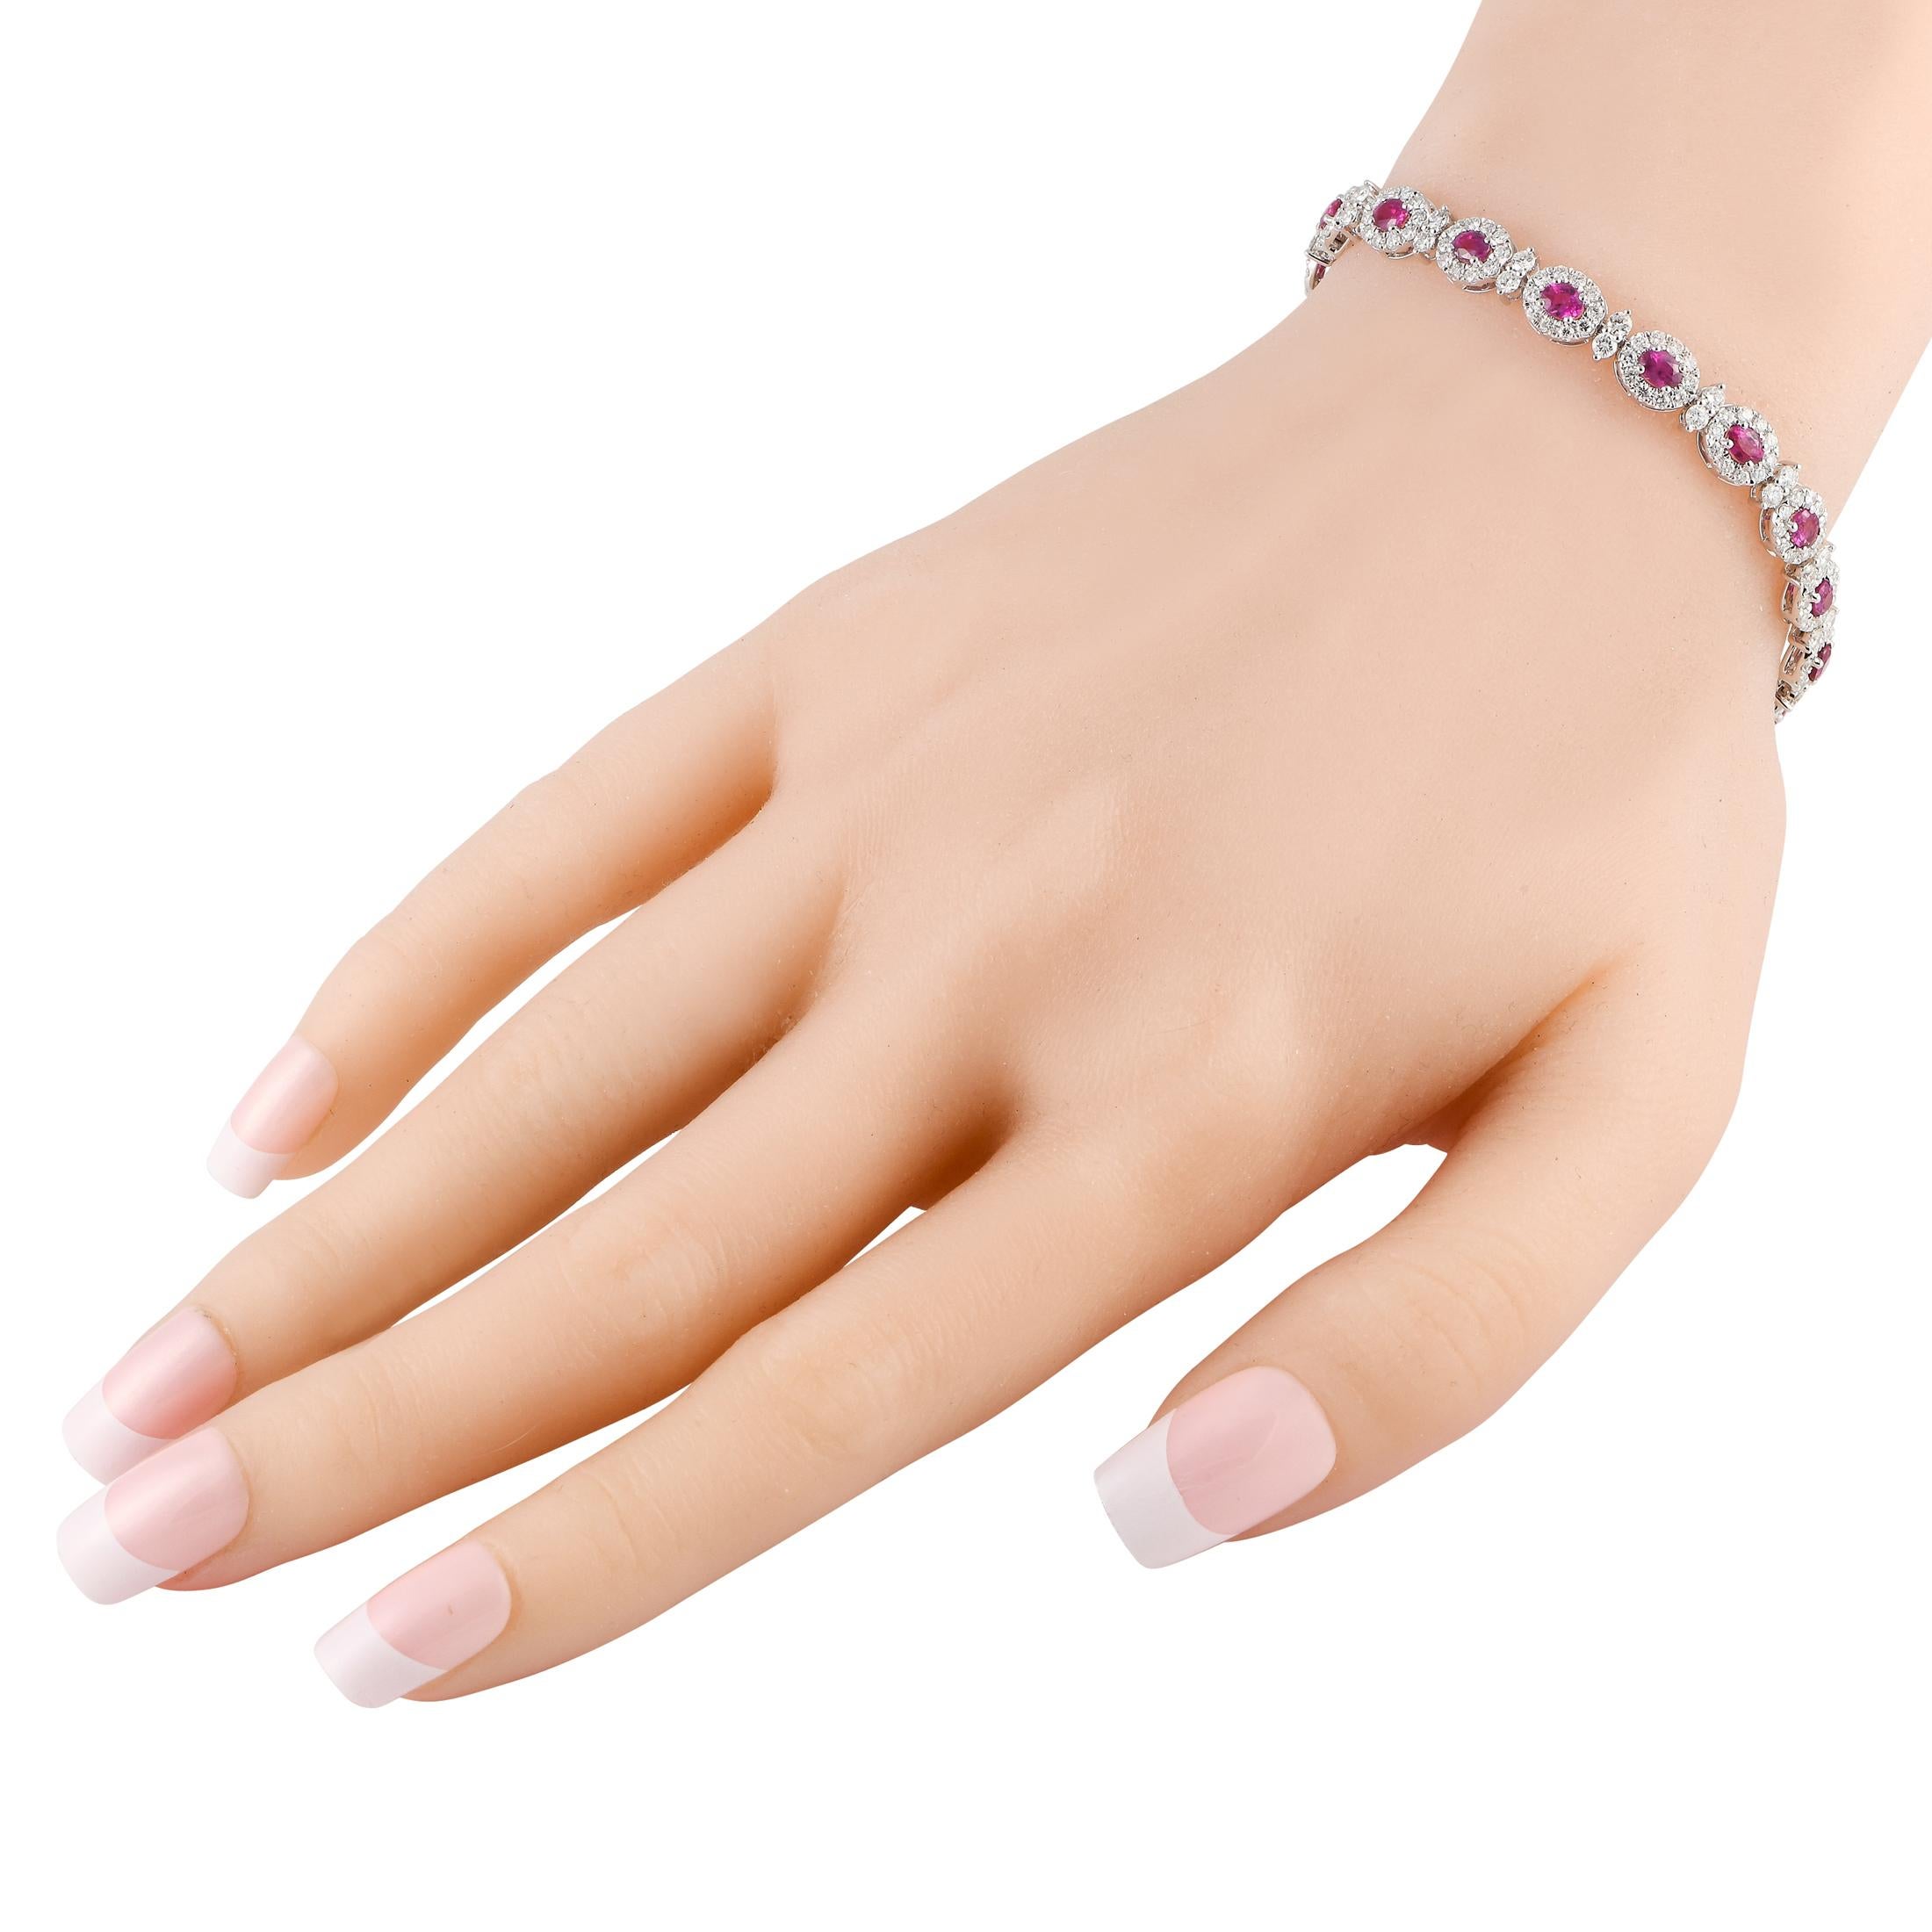 Ajoutez une touche de rose vif à un ensemble monochrome avec ce bracelet en diamants et rubis. Ce bijou éblouissant présente des rubis ovales sertis de diamants, chacun sur une monture ovale reliée par des duos de diamants. Attendez-vous à ce que ce